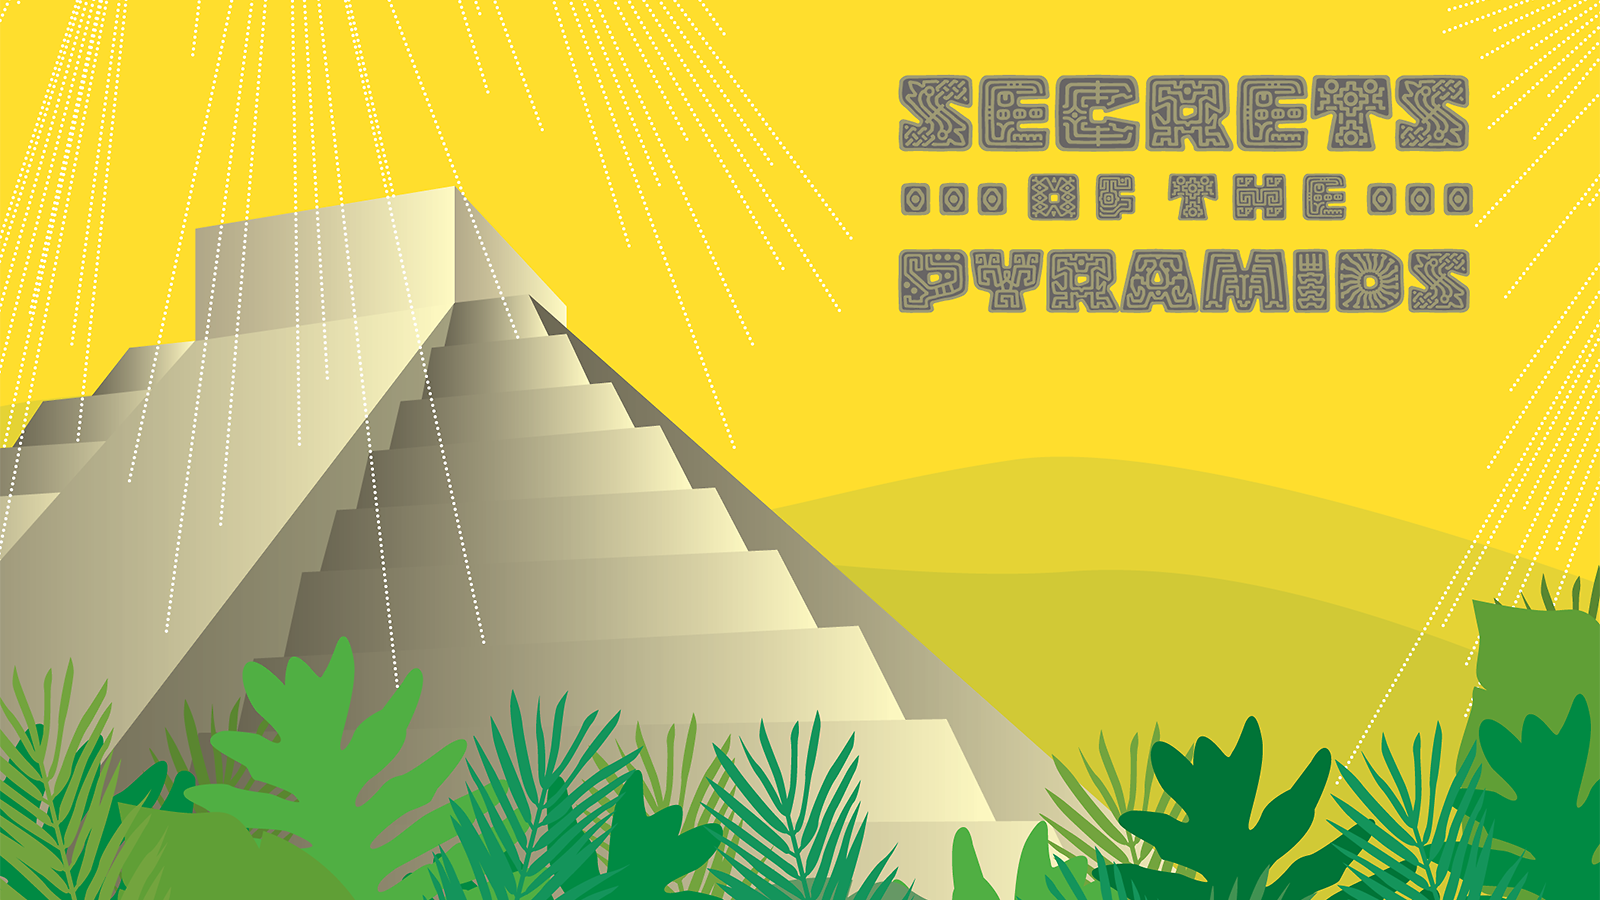 An illustration of a Mayan pyramid